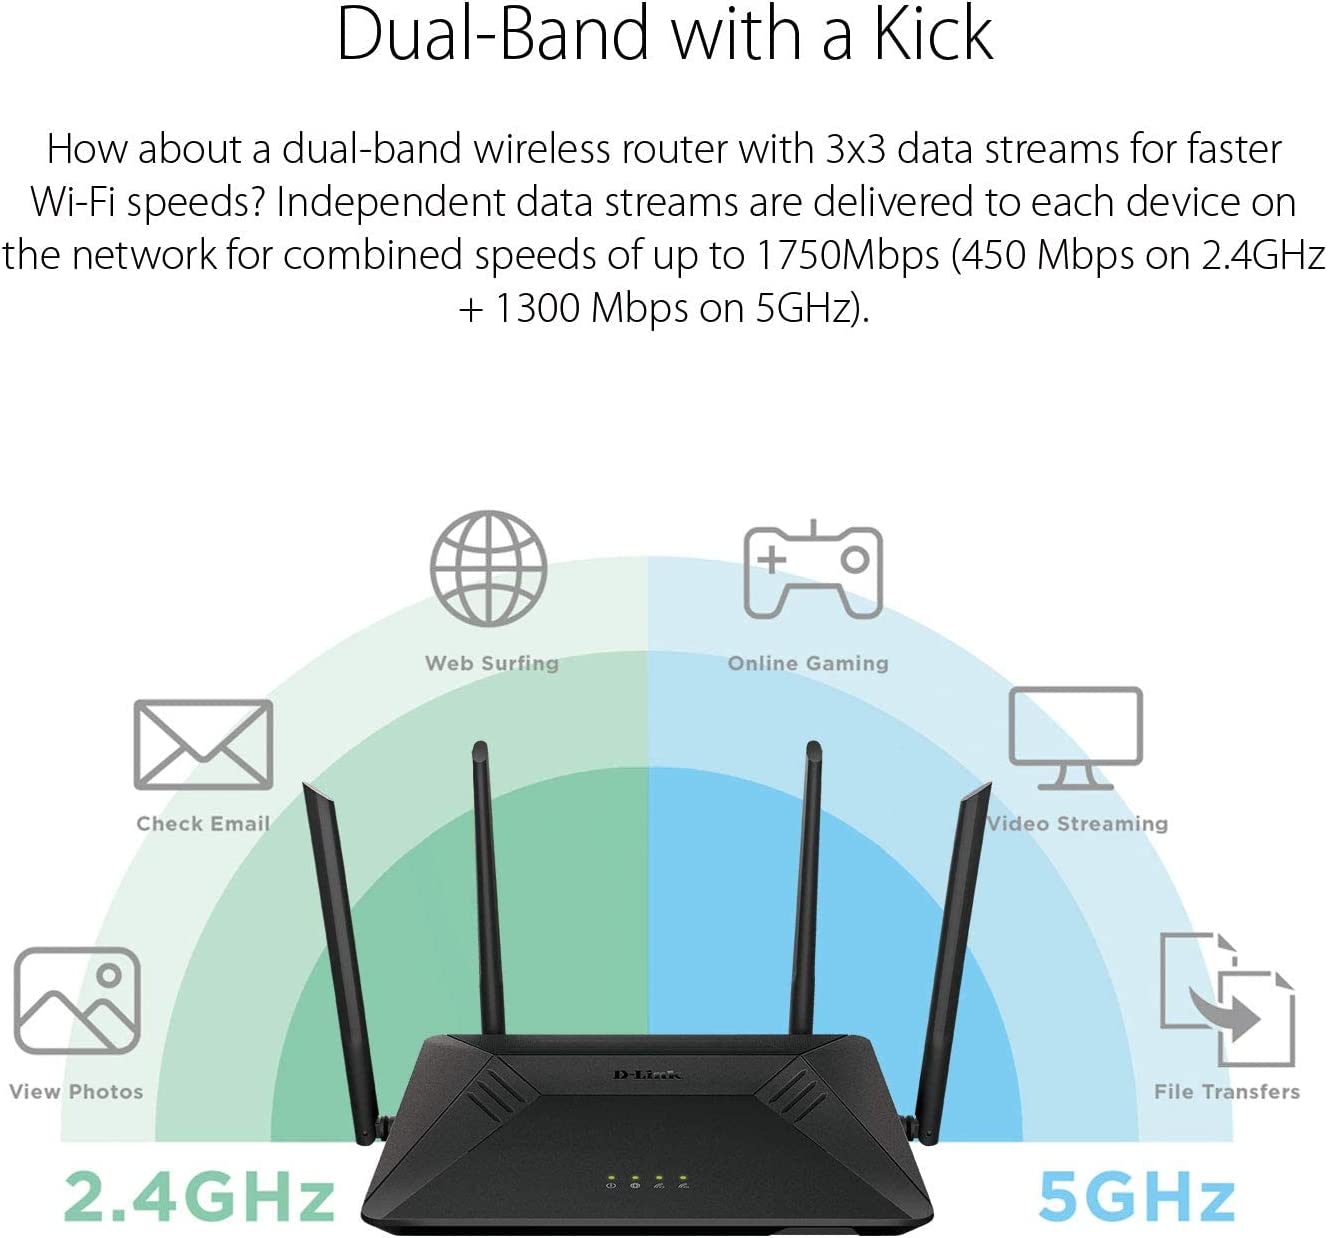 D-Link AC1750 High-Power Wi-Fi Gigabit Router - DIR-867